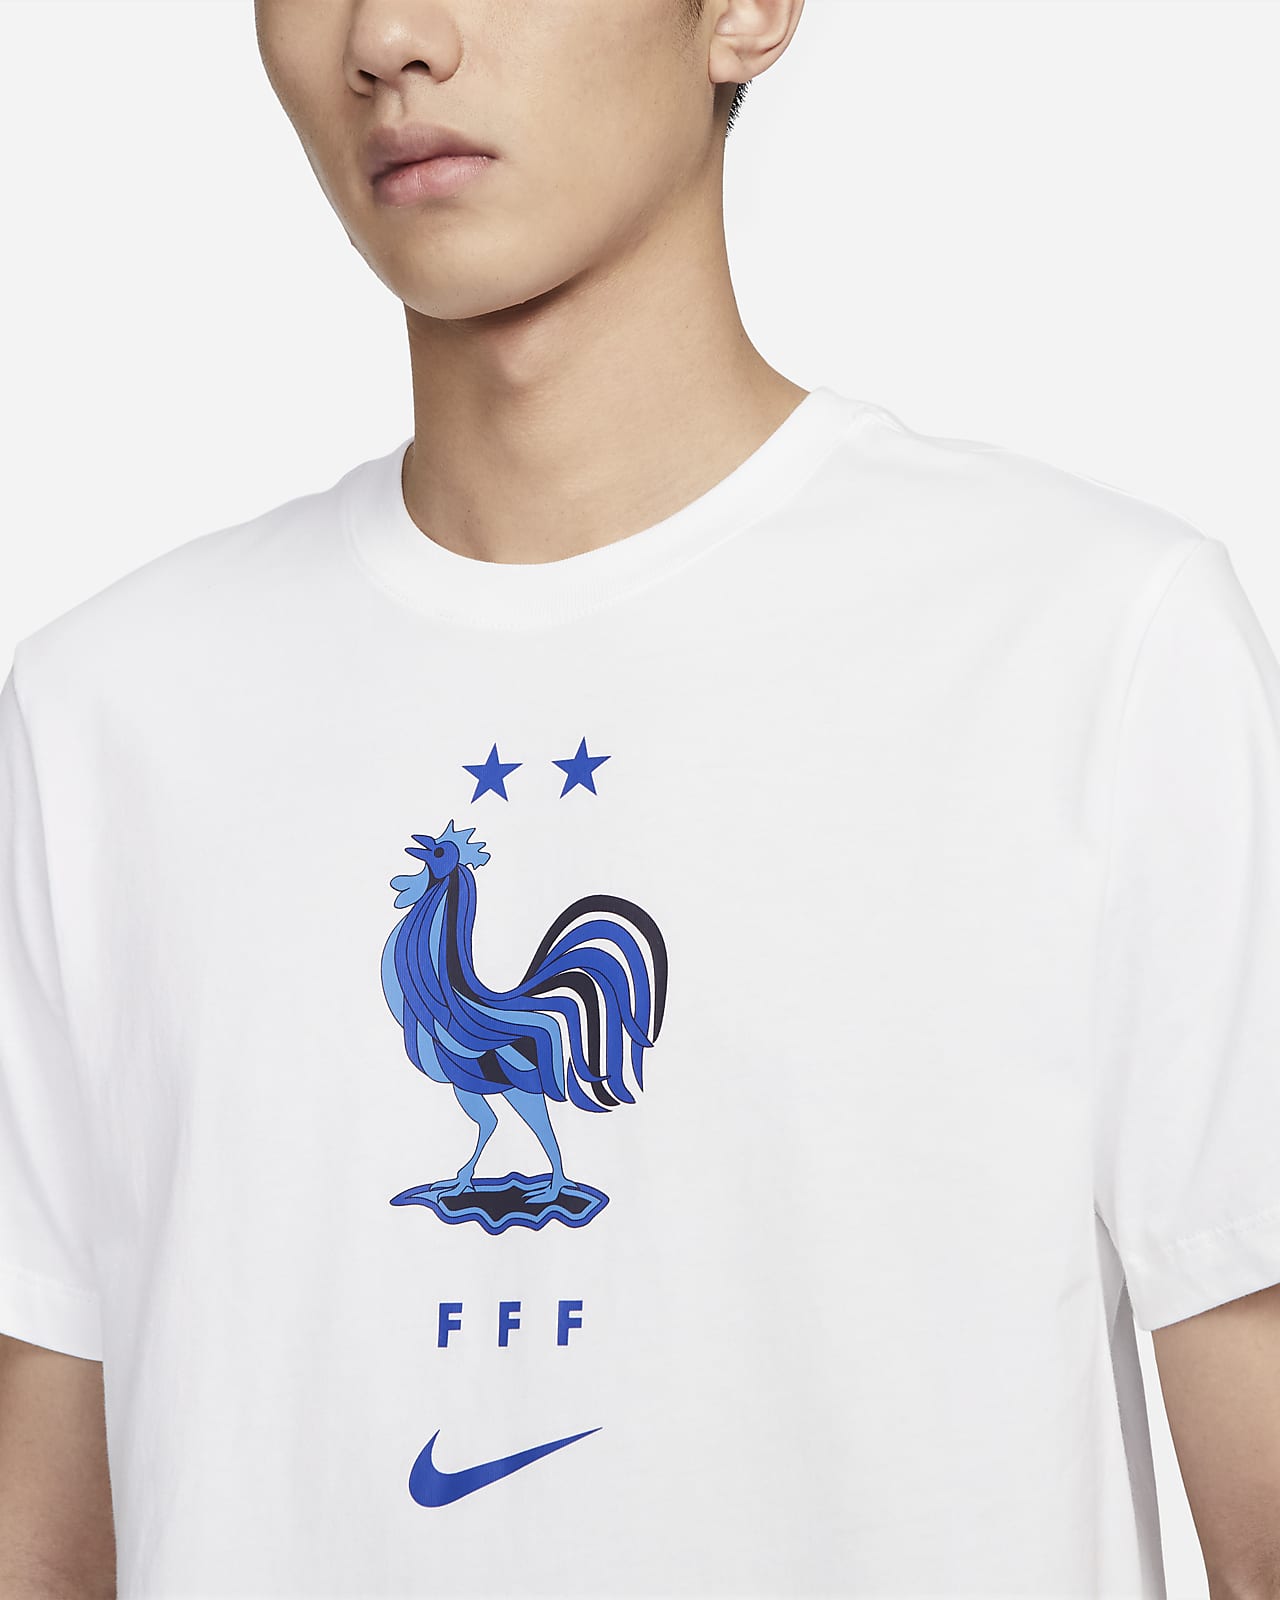 Hoogland toonhoogte Tussen France Men's Nike T-Shirt. Nike.com